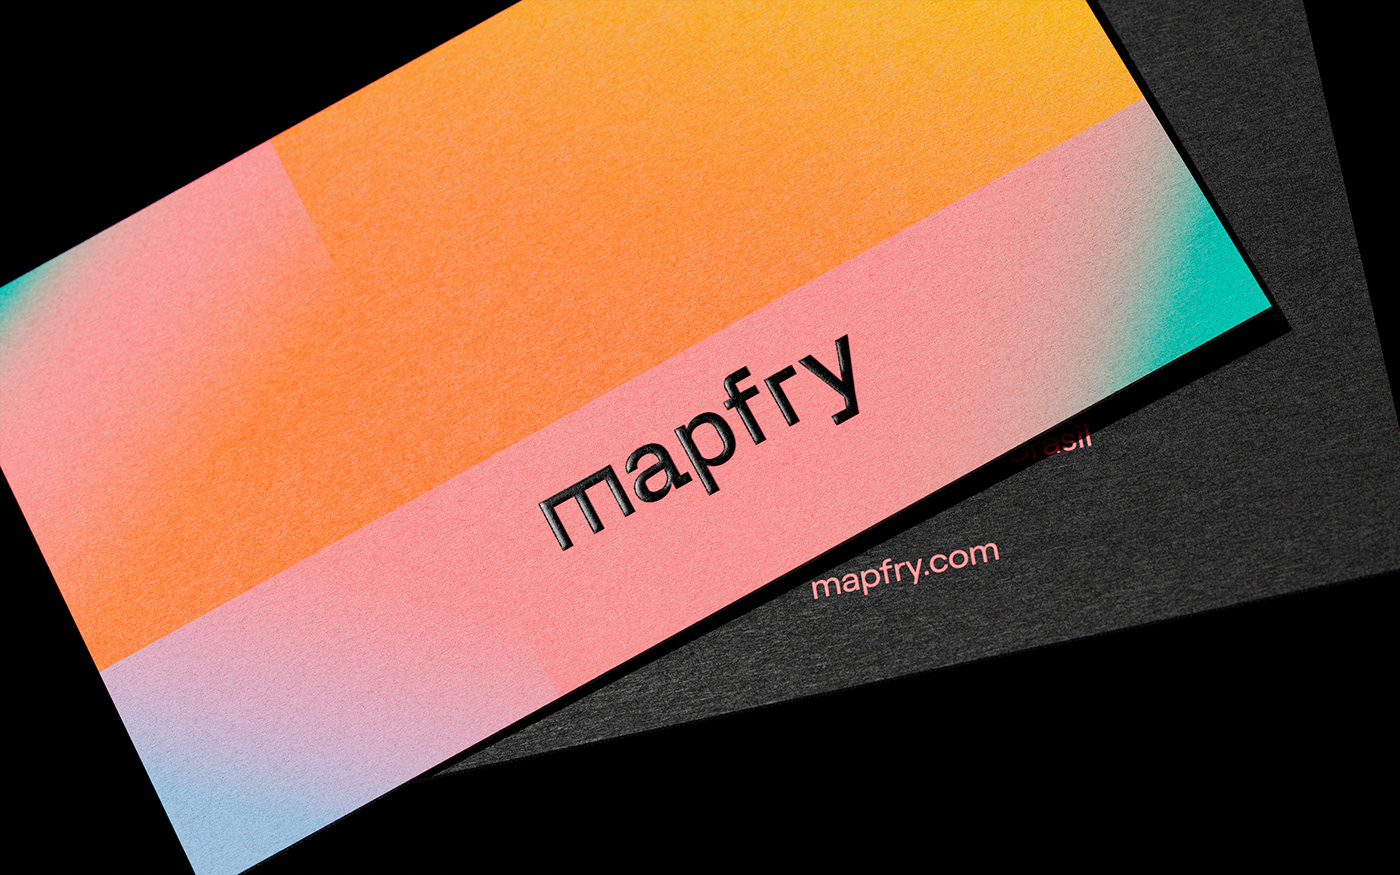 Mapfry